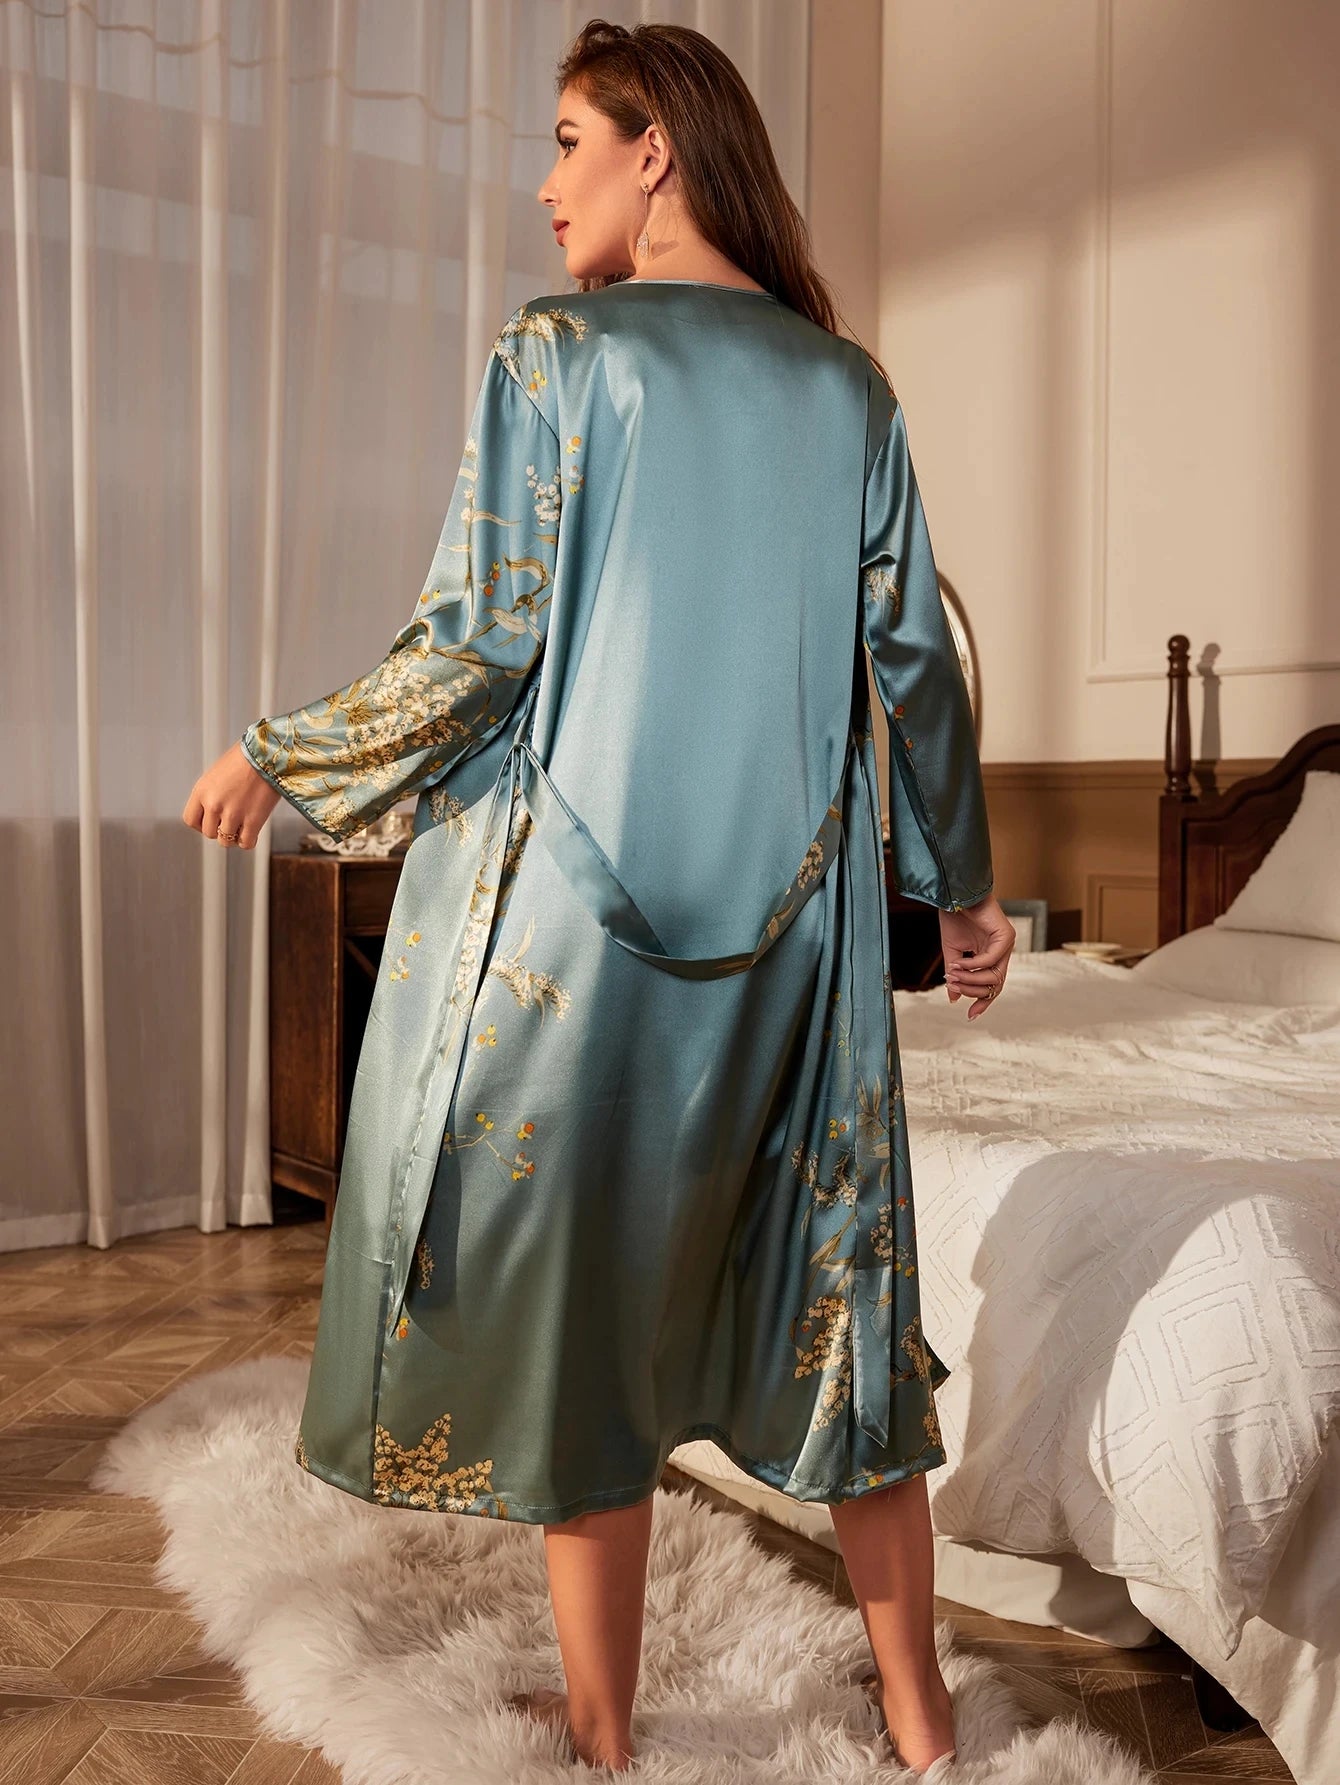 Dynasty Satin Kimono Loungewear LUXLIFE BRANDS